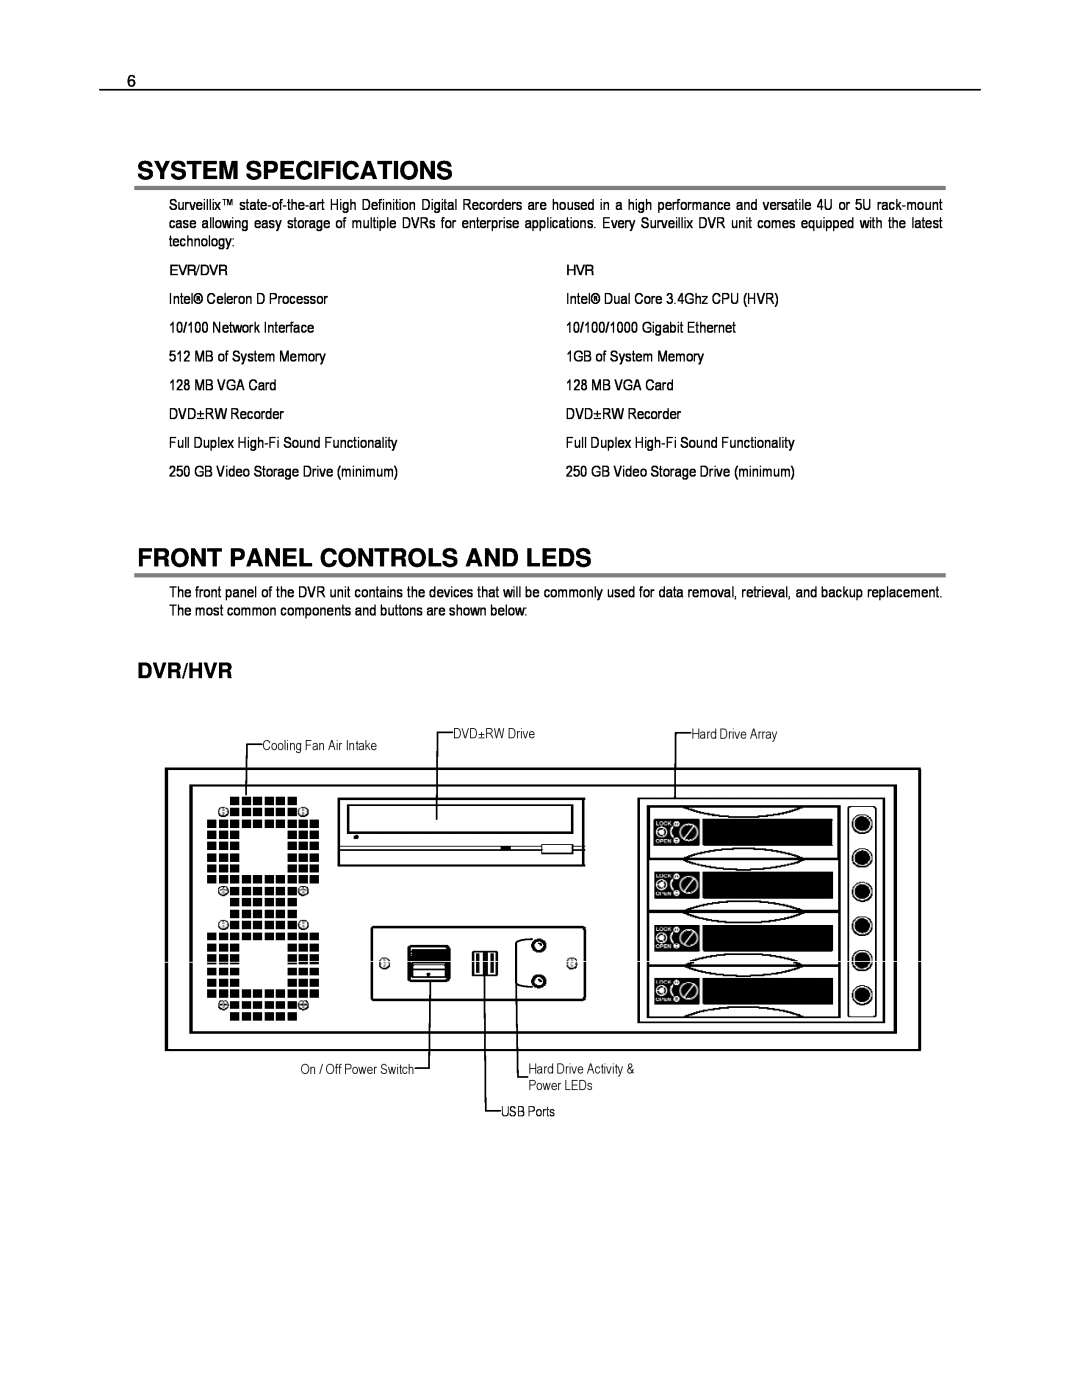 Toshiba EVR8-X, EVR32-X, HVR32-X, HVR8-X, HVR16-X System Specifications, Front Panel Controls And Leds, Dvr/Hvr, Evr/Dvr 